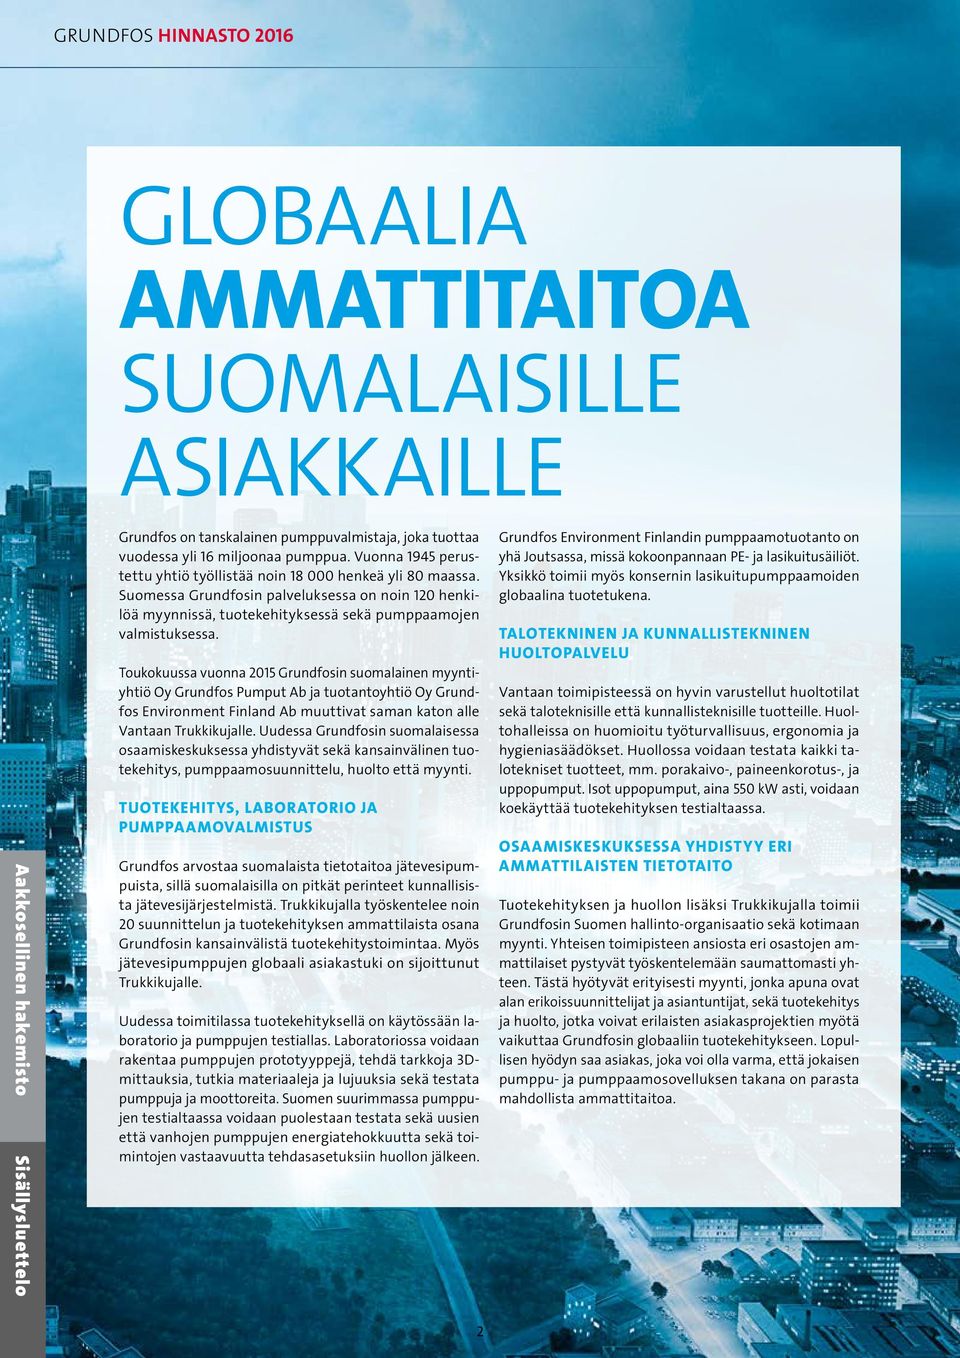 Toukokuussa vuonna 2015 Grundfosin suomalainen myyntiyhtiö Oy Grundfos Pumput Ab ja tuotantoyhtiö Oy Grundfos Environment Finland Ab muuttivat saman katon alle Vantaan Trukkikujalle.